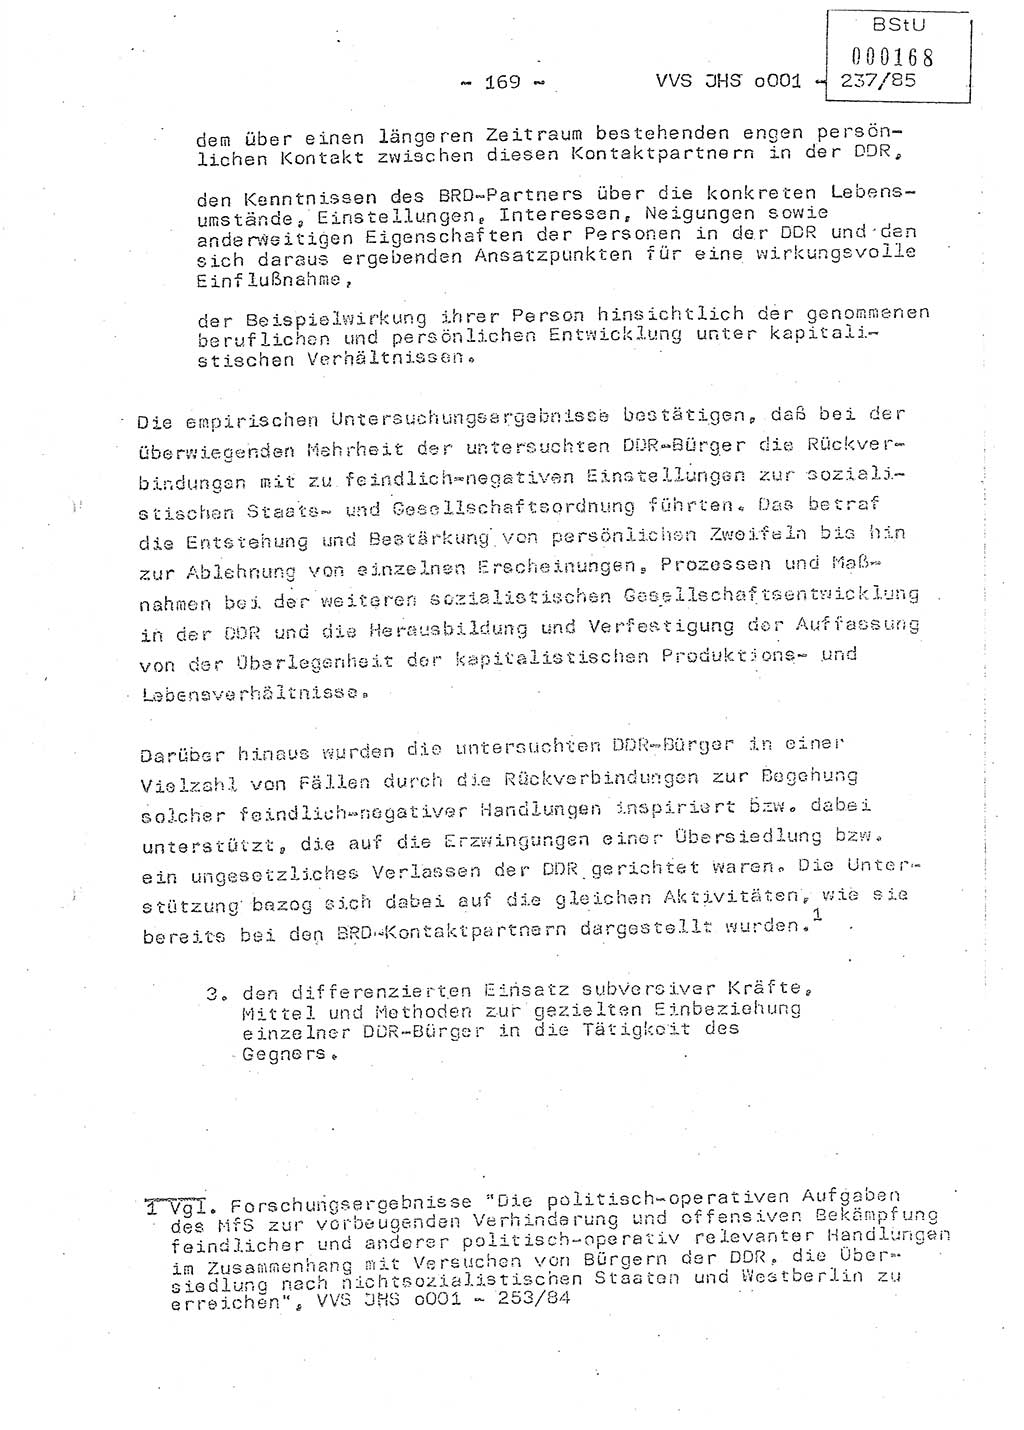 Dissertation Oberstleutnant Peter Jakulski (JHS), Oberstleutnat Christian Rudolph (HA Ⅸ), Major Horst Böttger (ZMD), Major Wolfgang Grüneberg (JHS), Major Albert Meutsch (JHS), Ministerium für Staatssicherheit (MfS) [Deutsche Demokratische Republik (DDR)], Juristische Hochschule (JHS), Vertrauliche Verschlußsache (VVS) o001-237/85, Potsdam 1985, Seite 169 (Diss. MfS DDR JHS VVS o001-237/85 1985, S. 169)